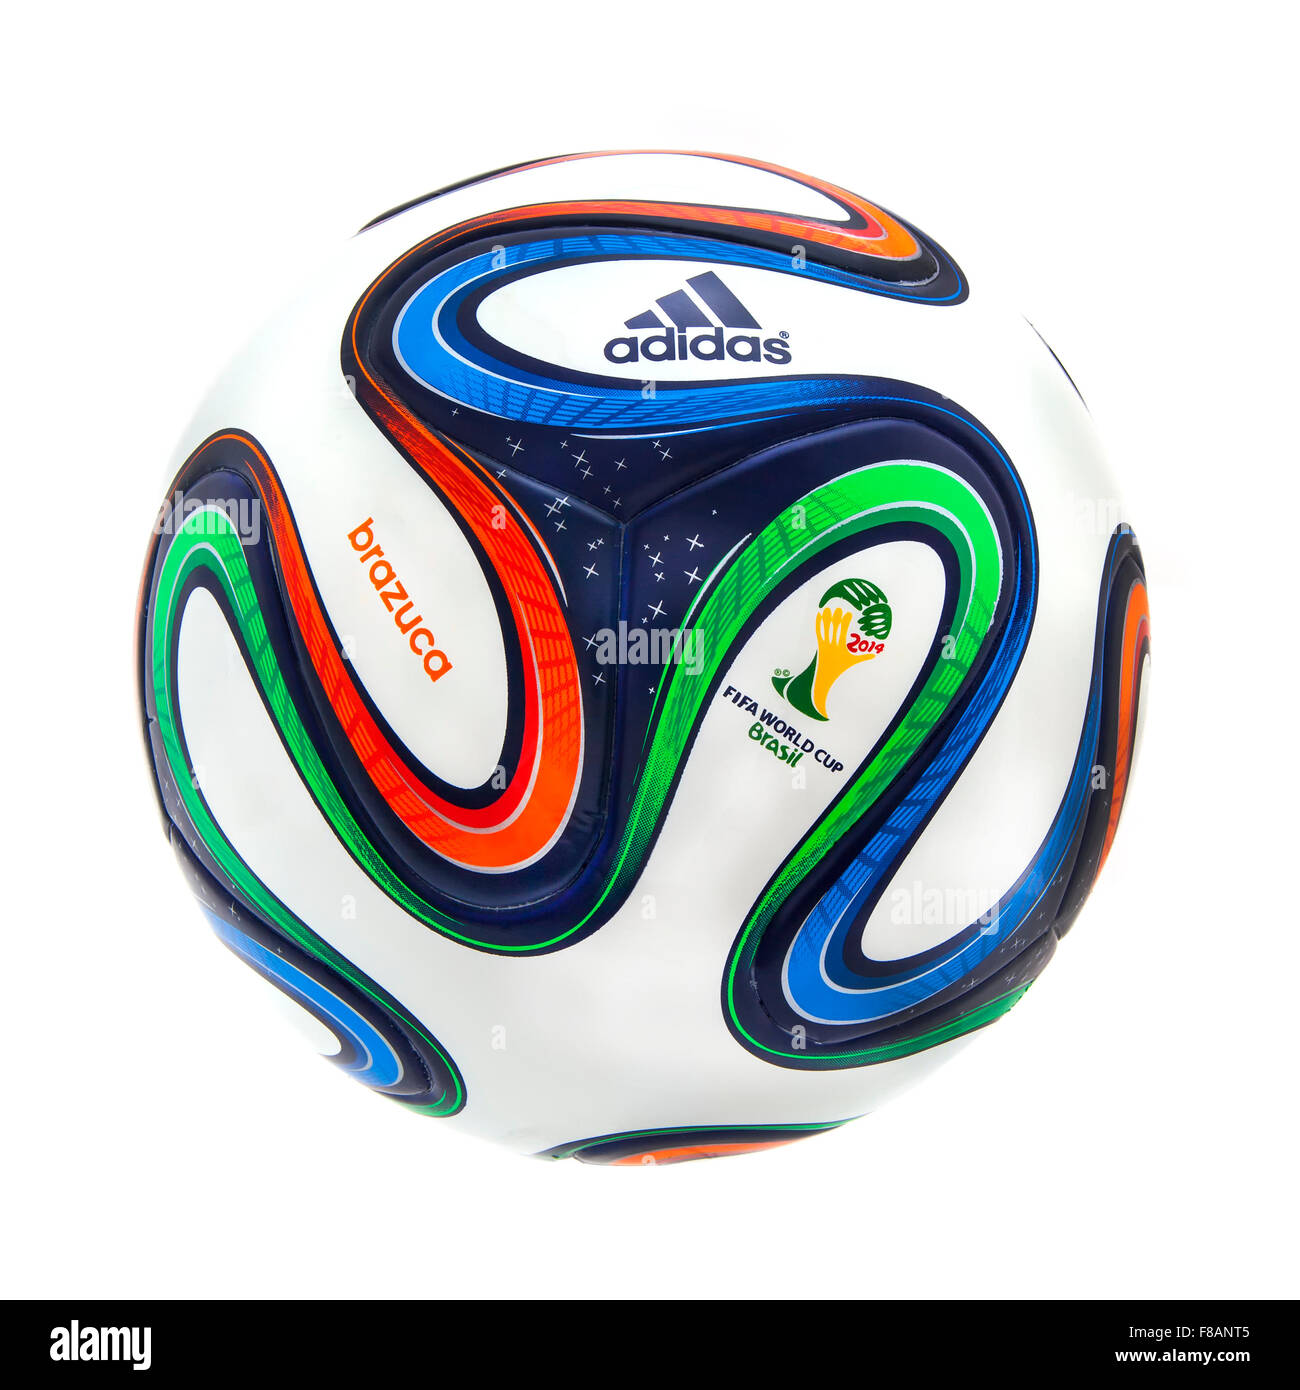 Adidas world cup football immagini e fotografie stock ad alta risoluzione -  Alamy